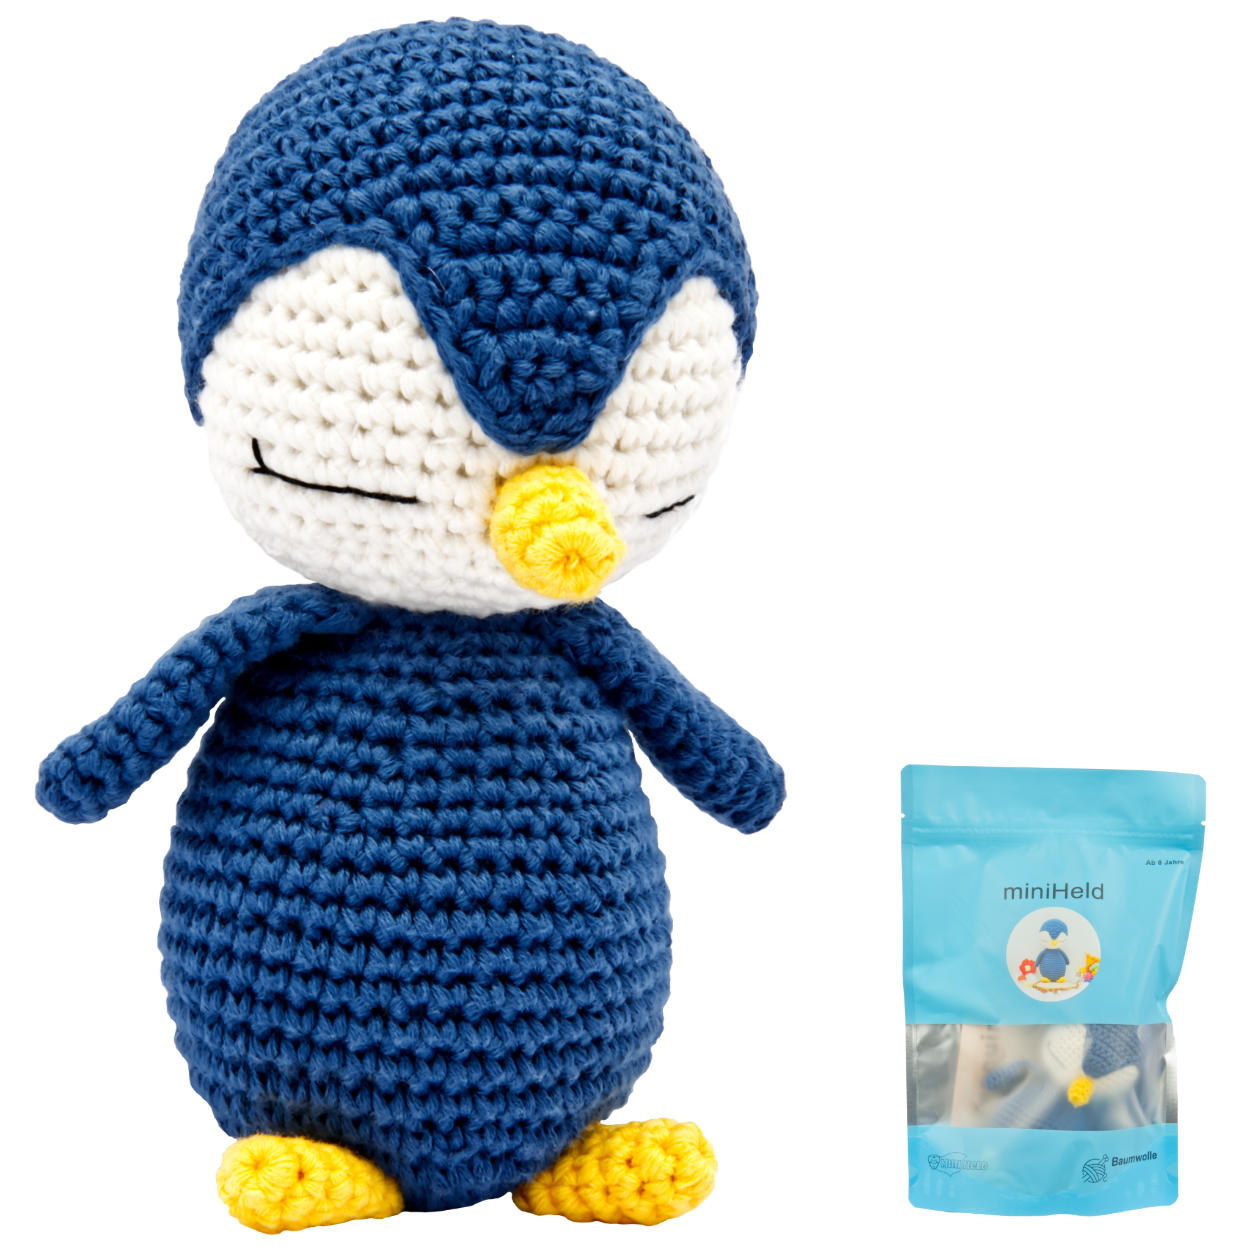 Handgestrickter Pinguin gehäkelt aus Baumwolle Spielzeug 16 cm